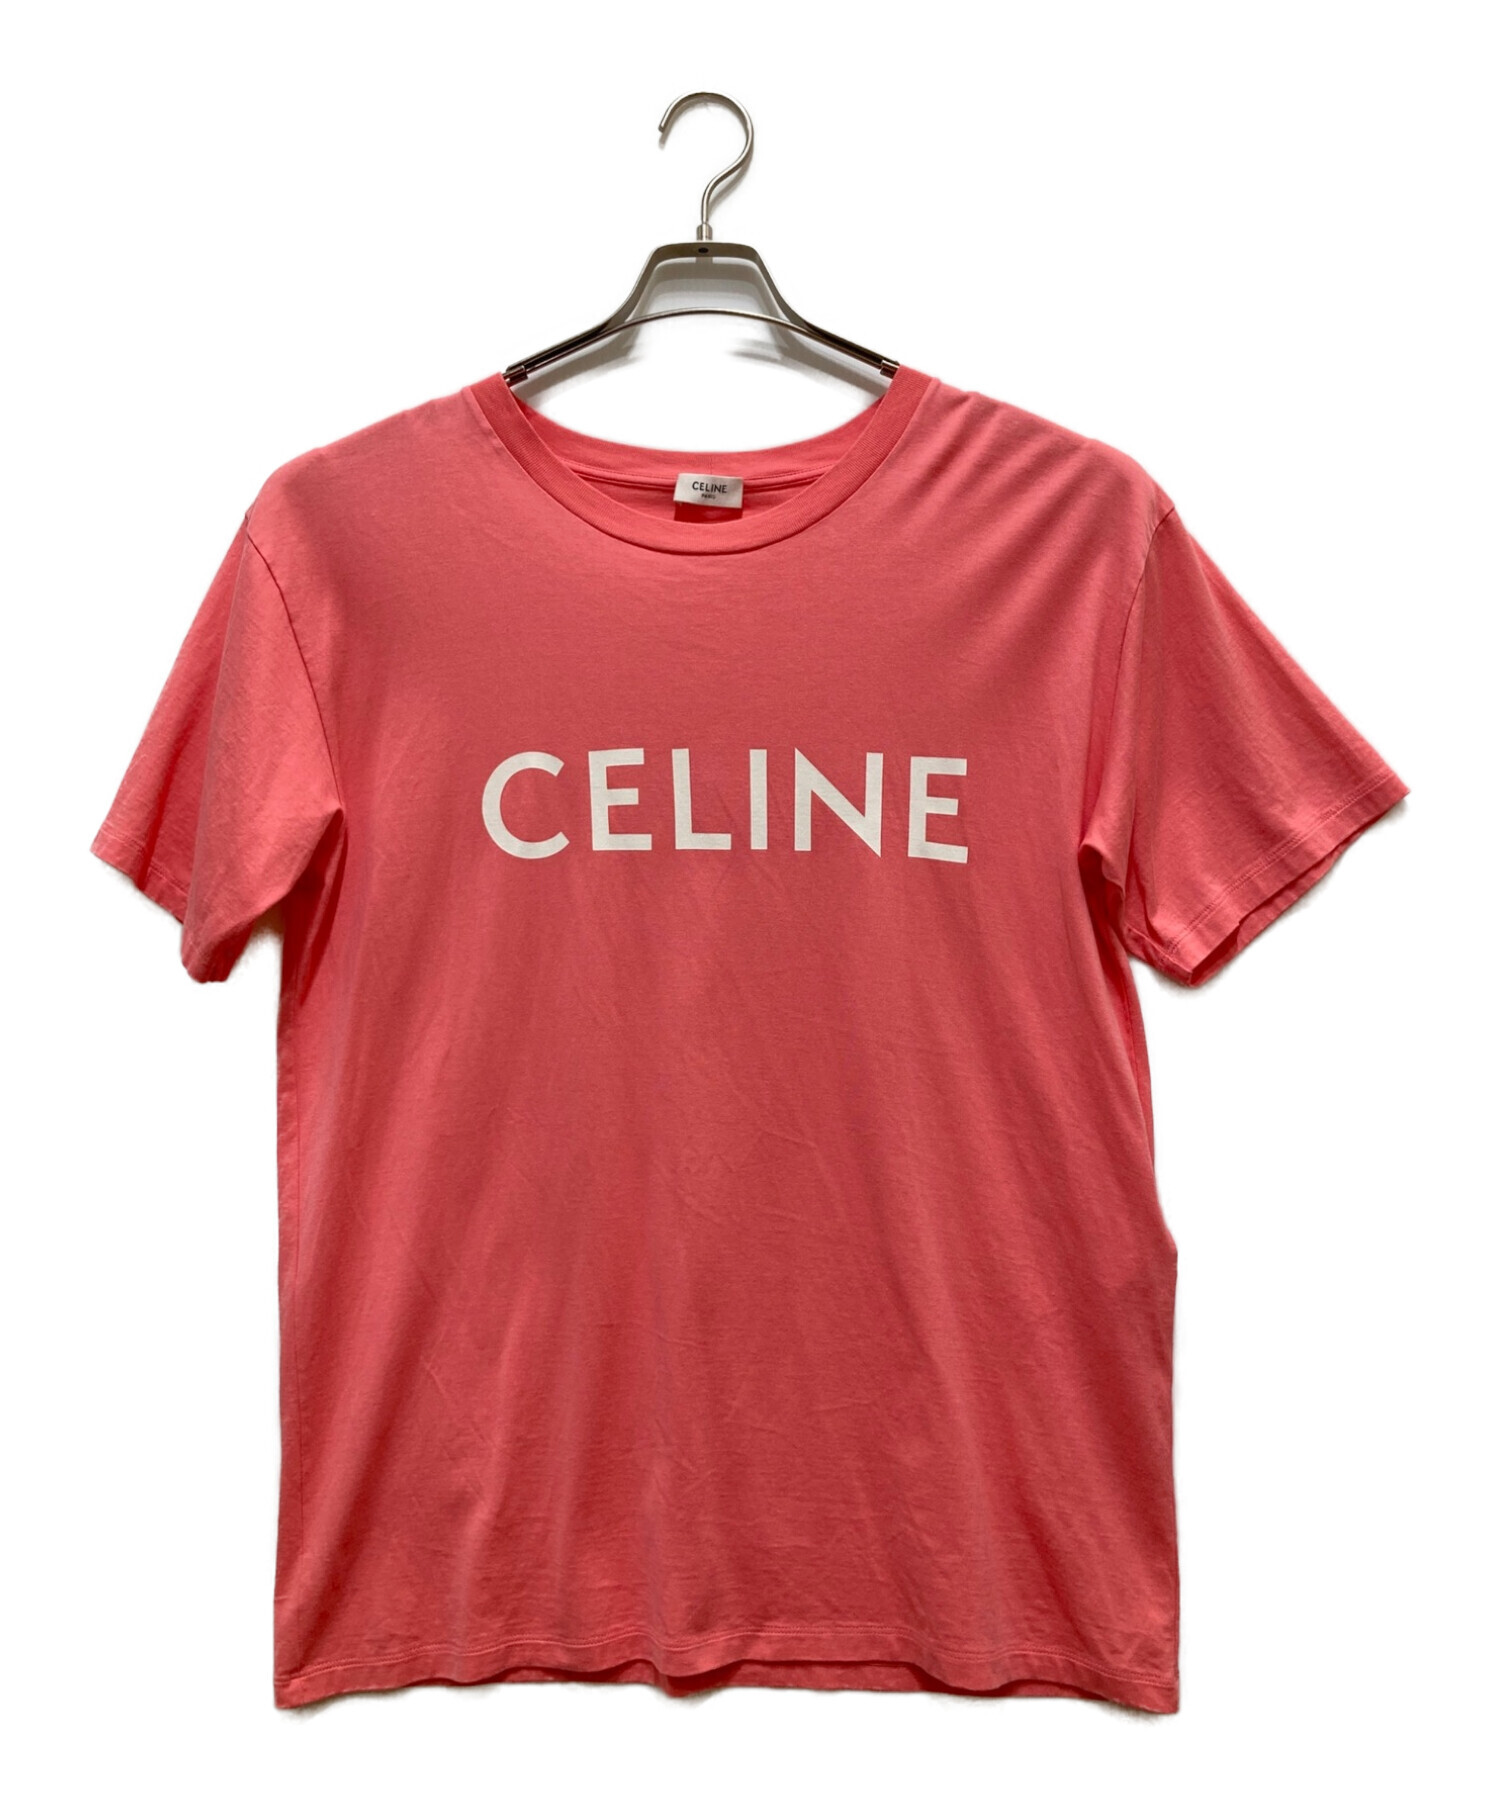 CELINE (セリーヌ) CELINE ルーズ Tシャツ / コットンジャージー ピンクフラミンゴ×ホワイト サイズ:S